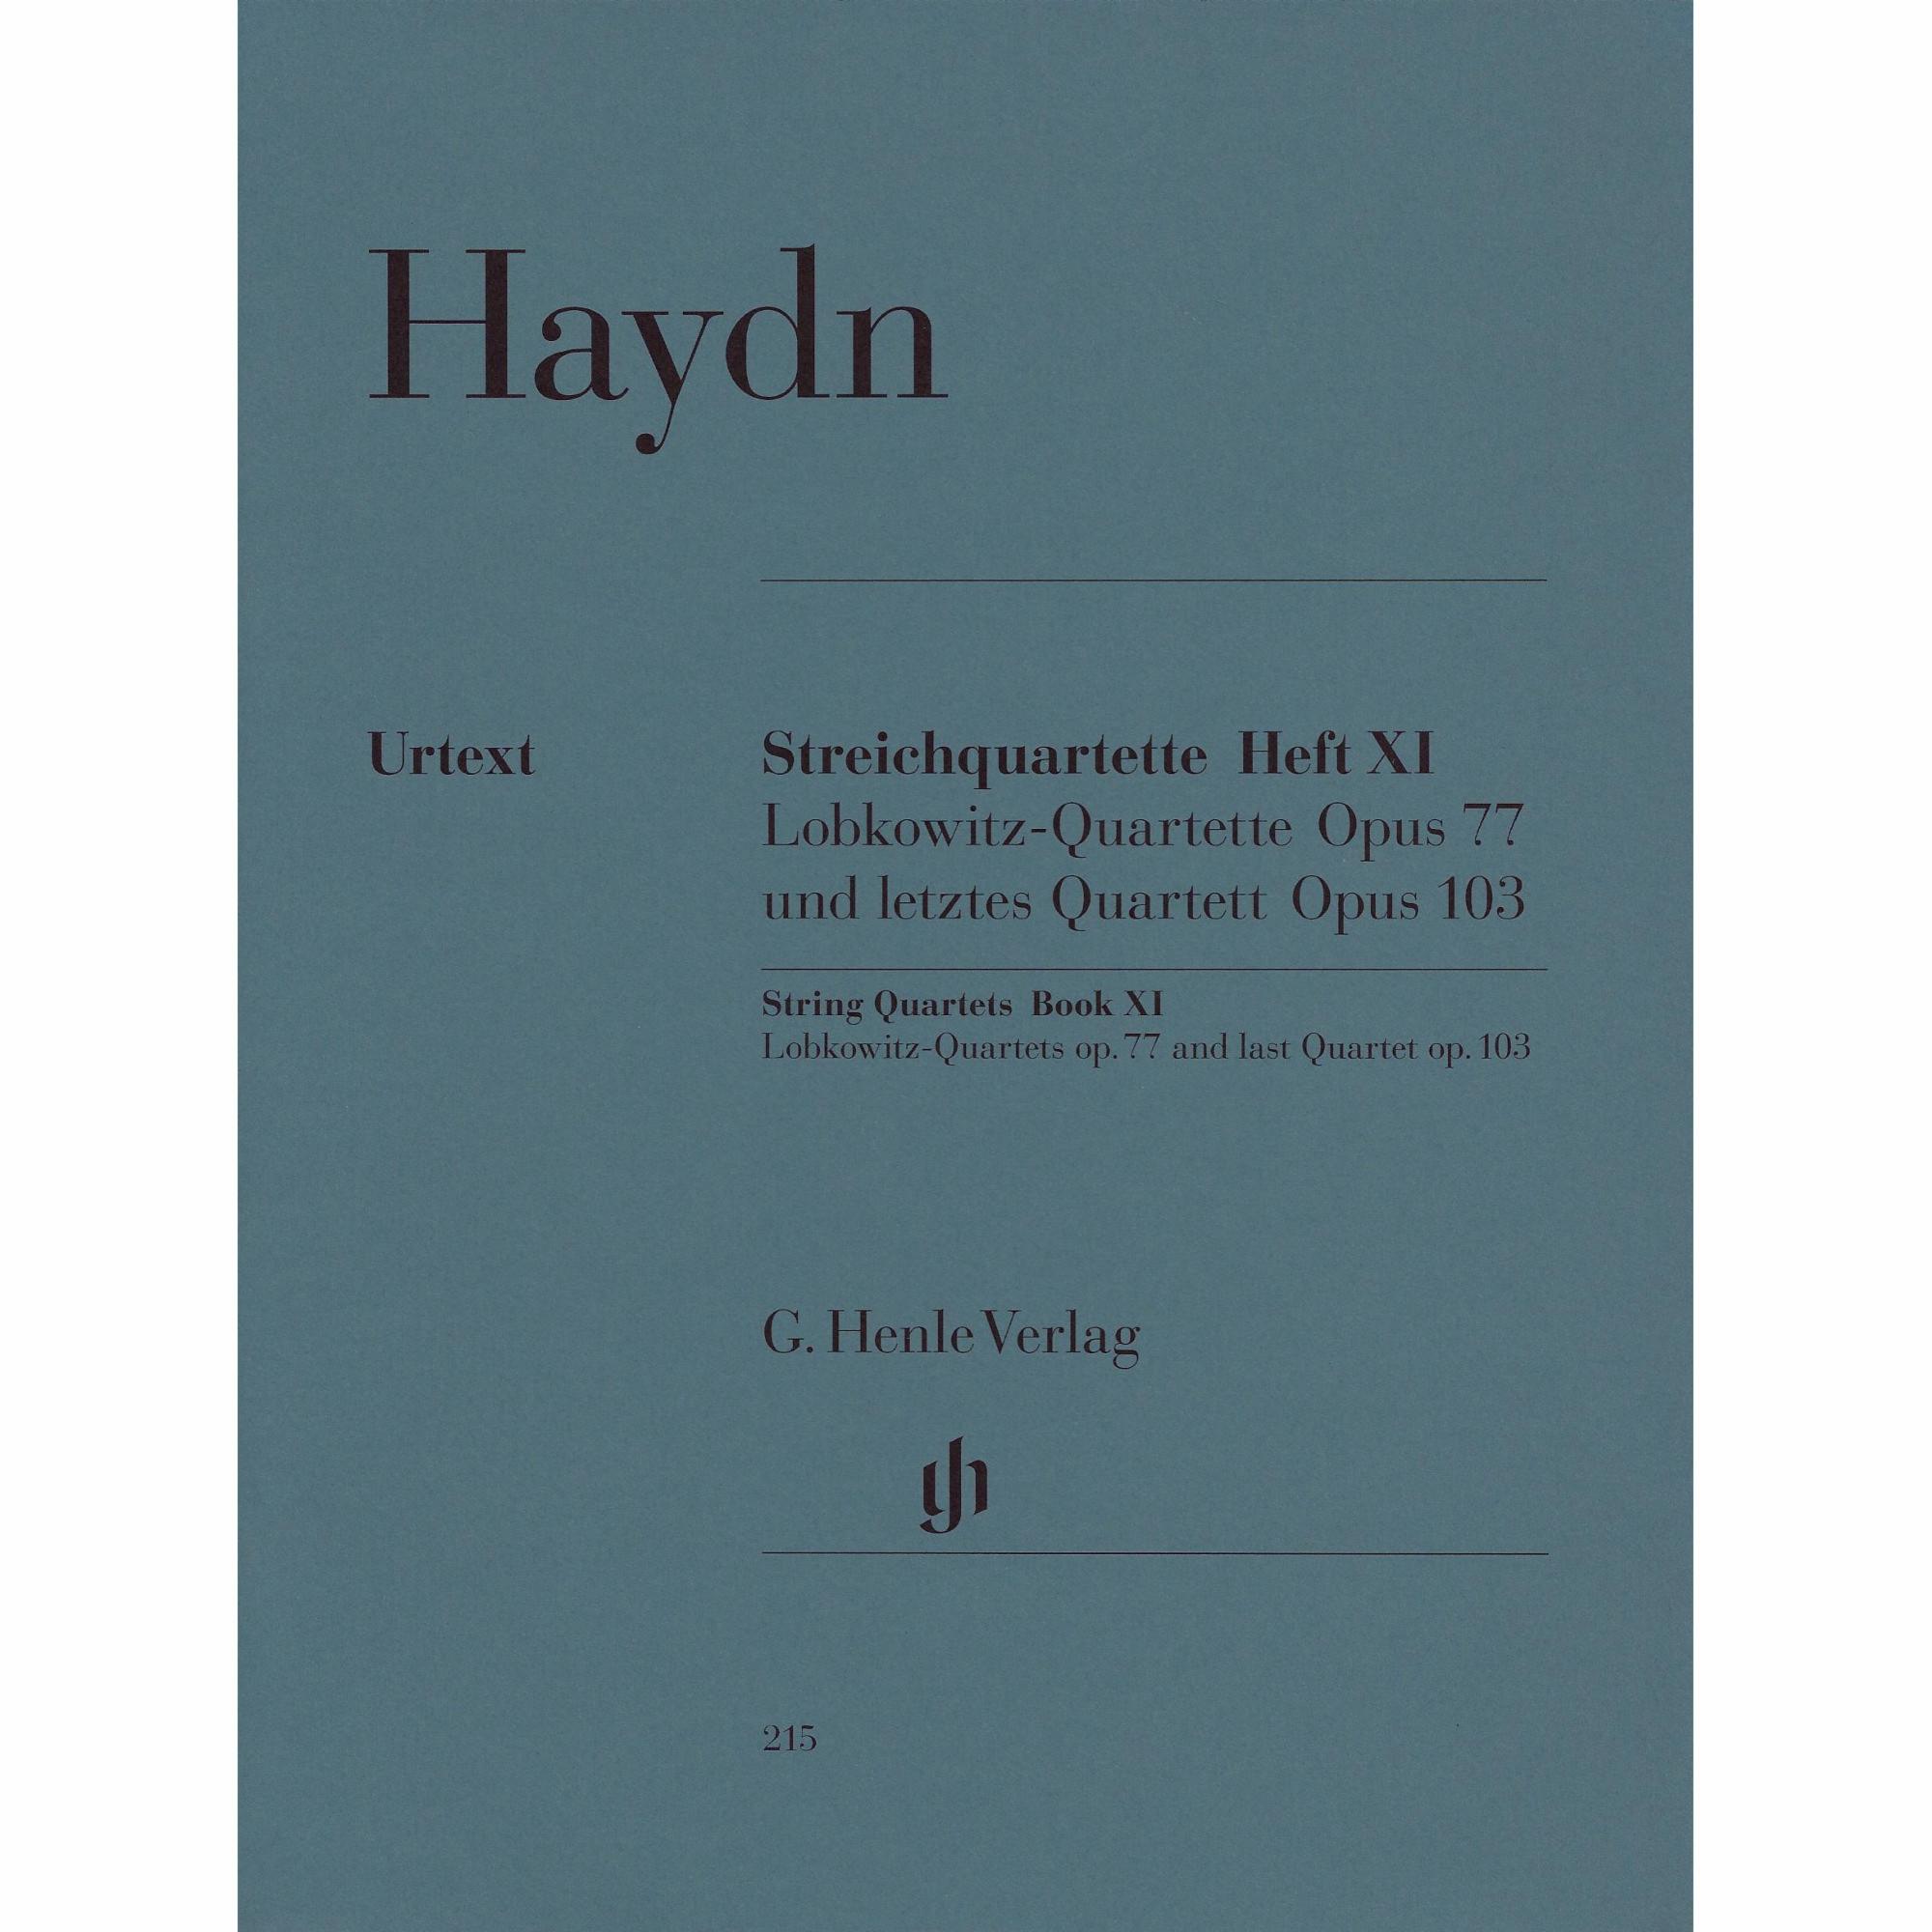 Haydn -- String Quartets, Book XI